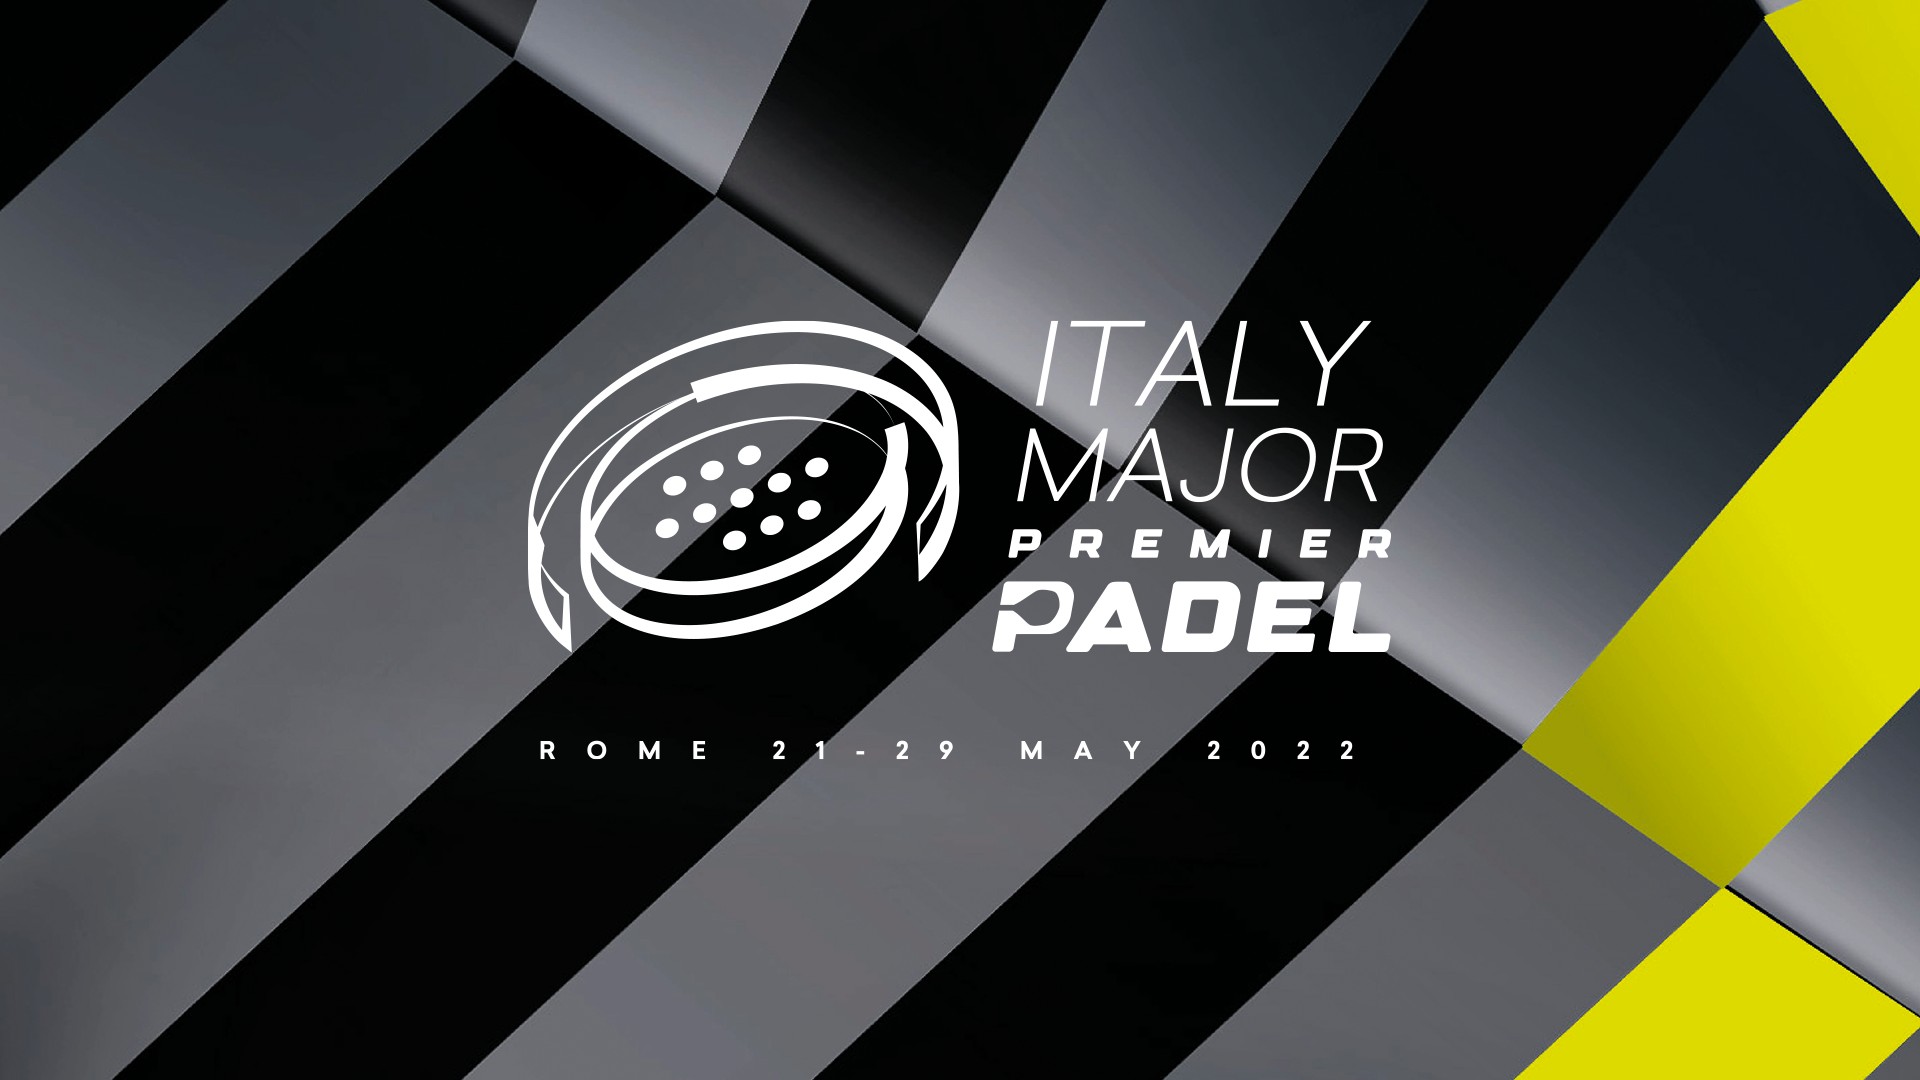 italienischer Major premier padel Logo